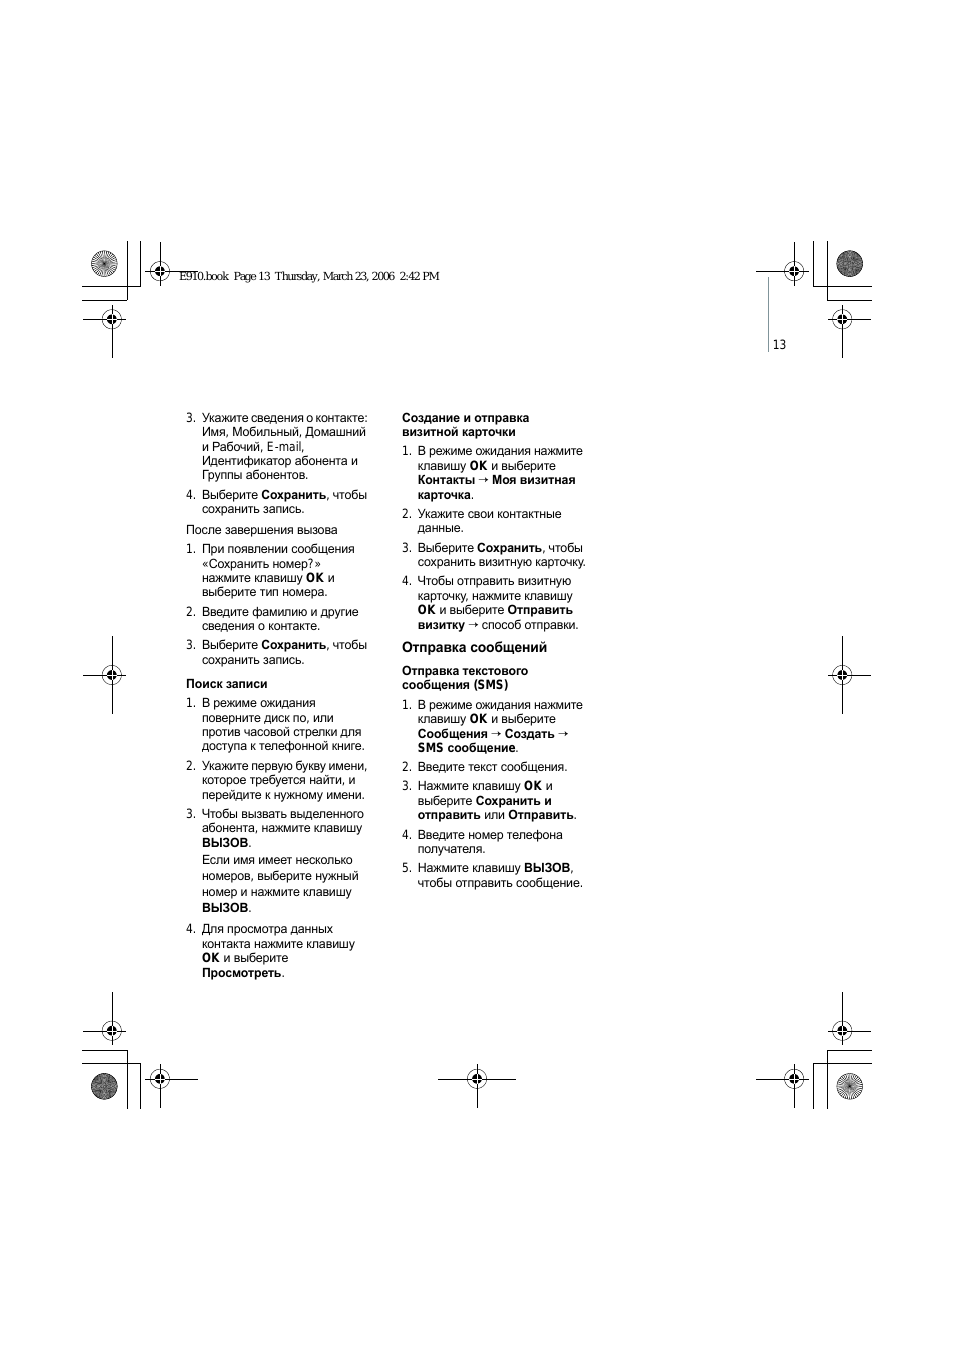 Инструкция по эксплуатации Bang & Olufsen Serene - User Guide | Страница 16 / 93